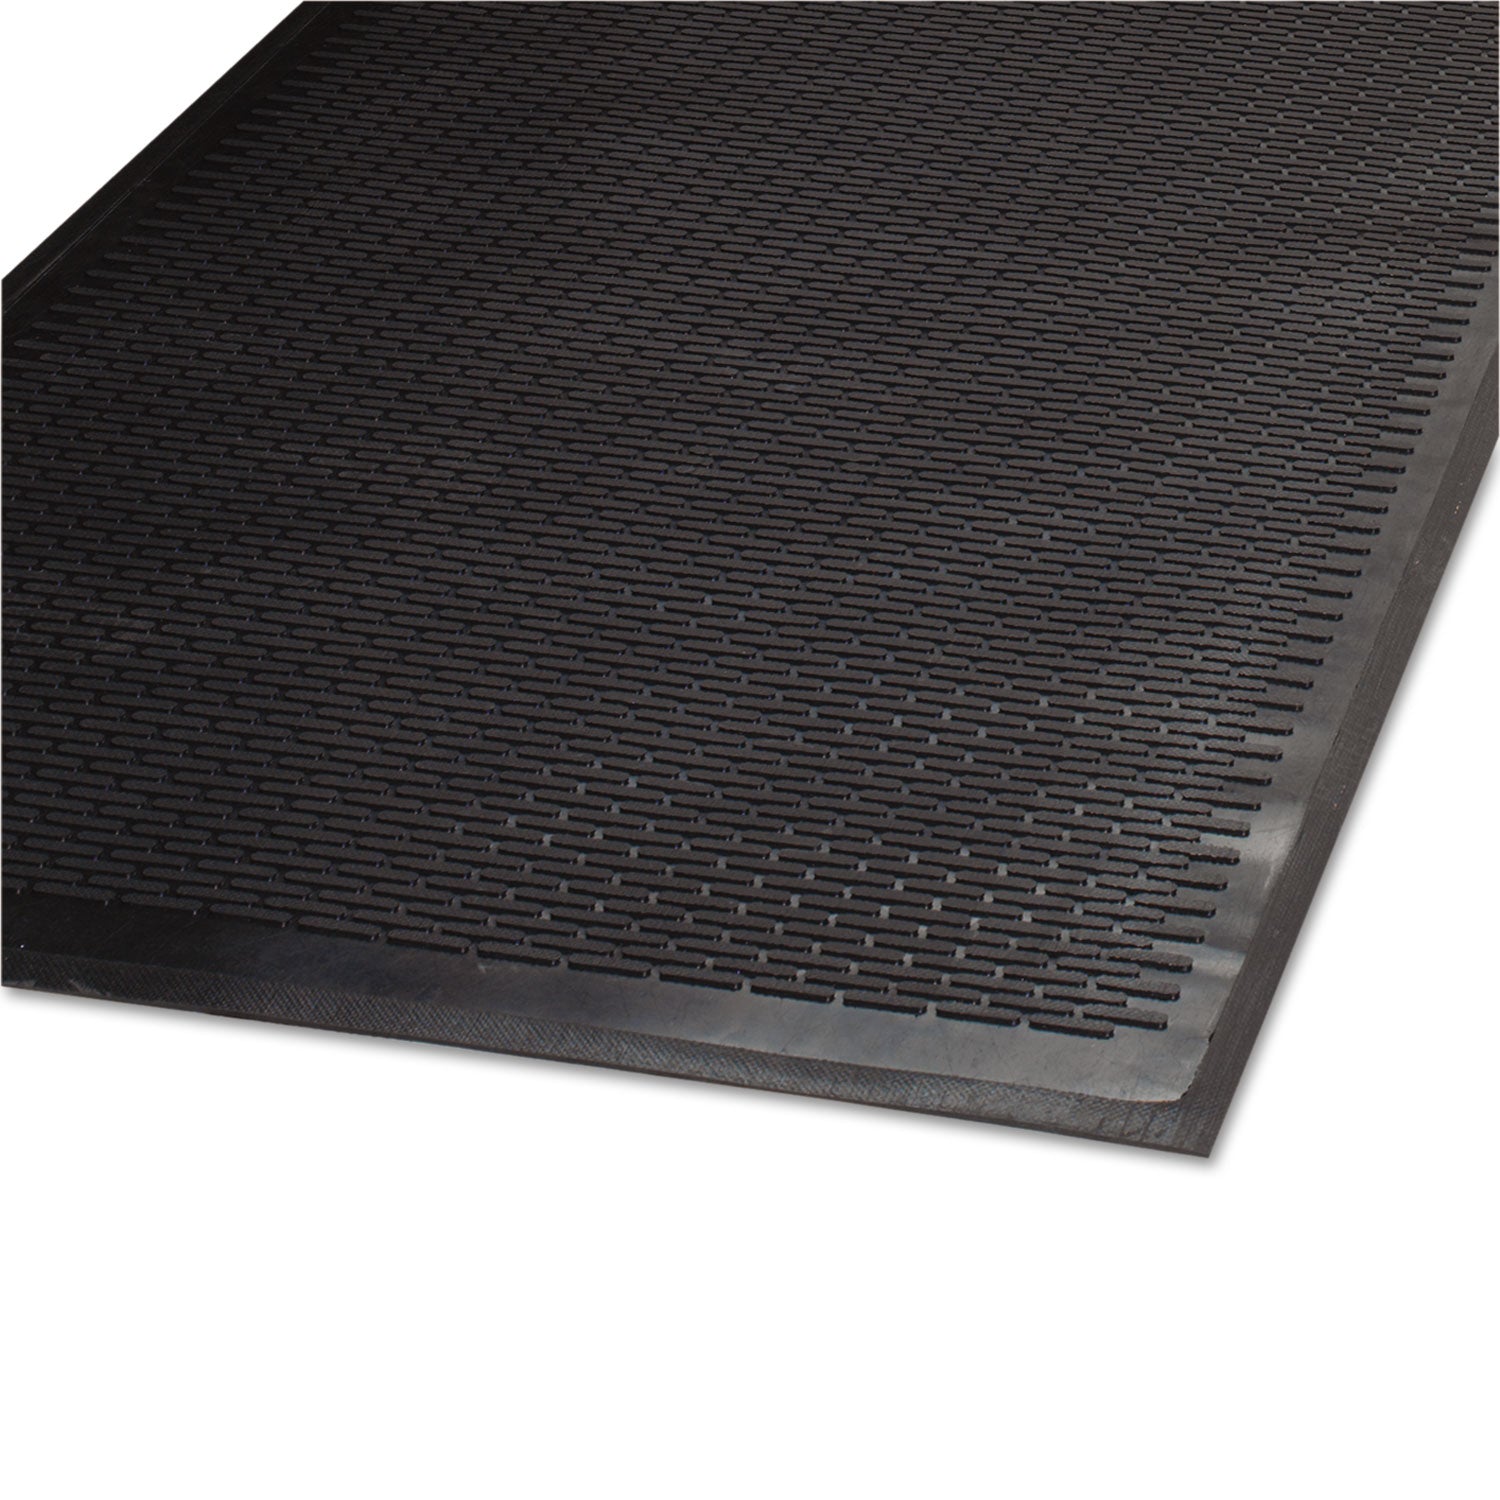 Clean Step Outdoor Rubber Scraper Mat, Polypropylene, 36 x 60, Black - 